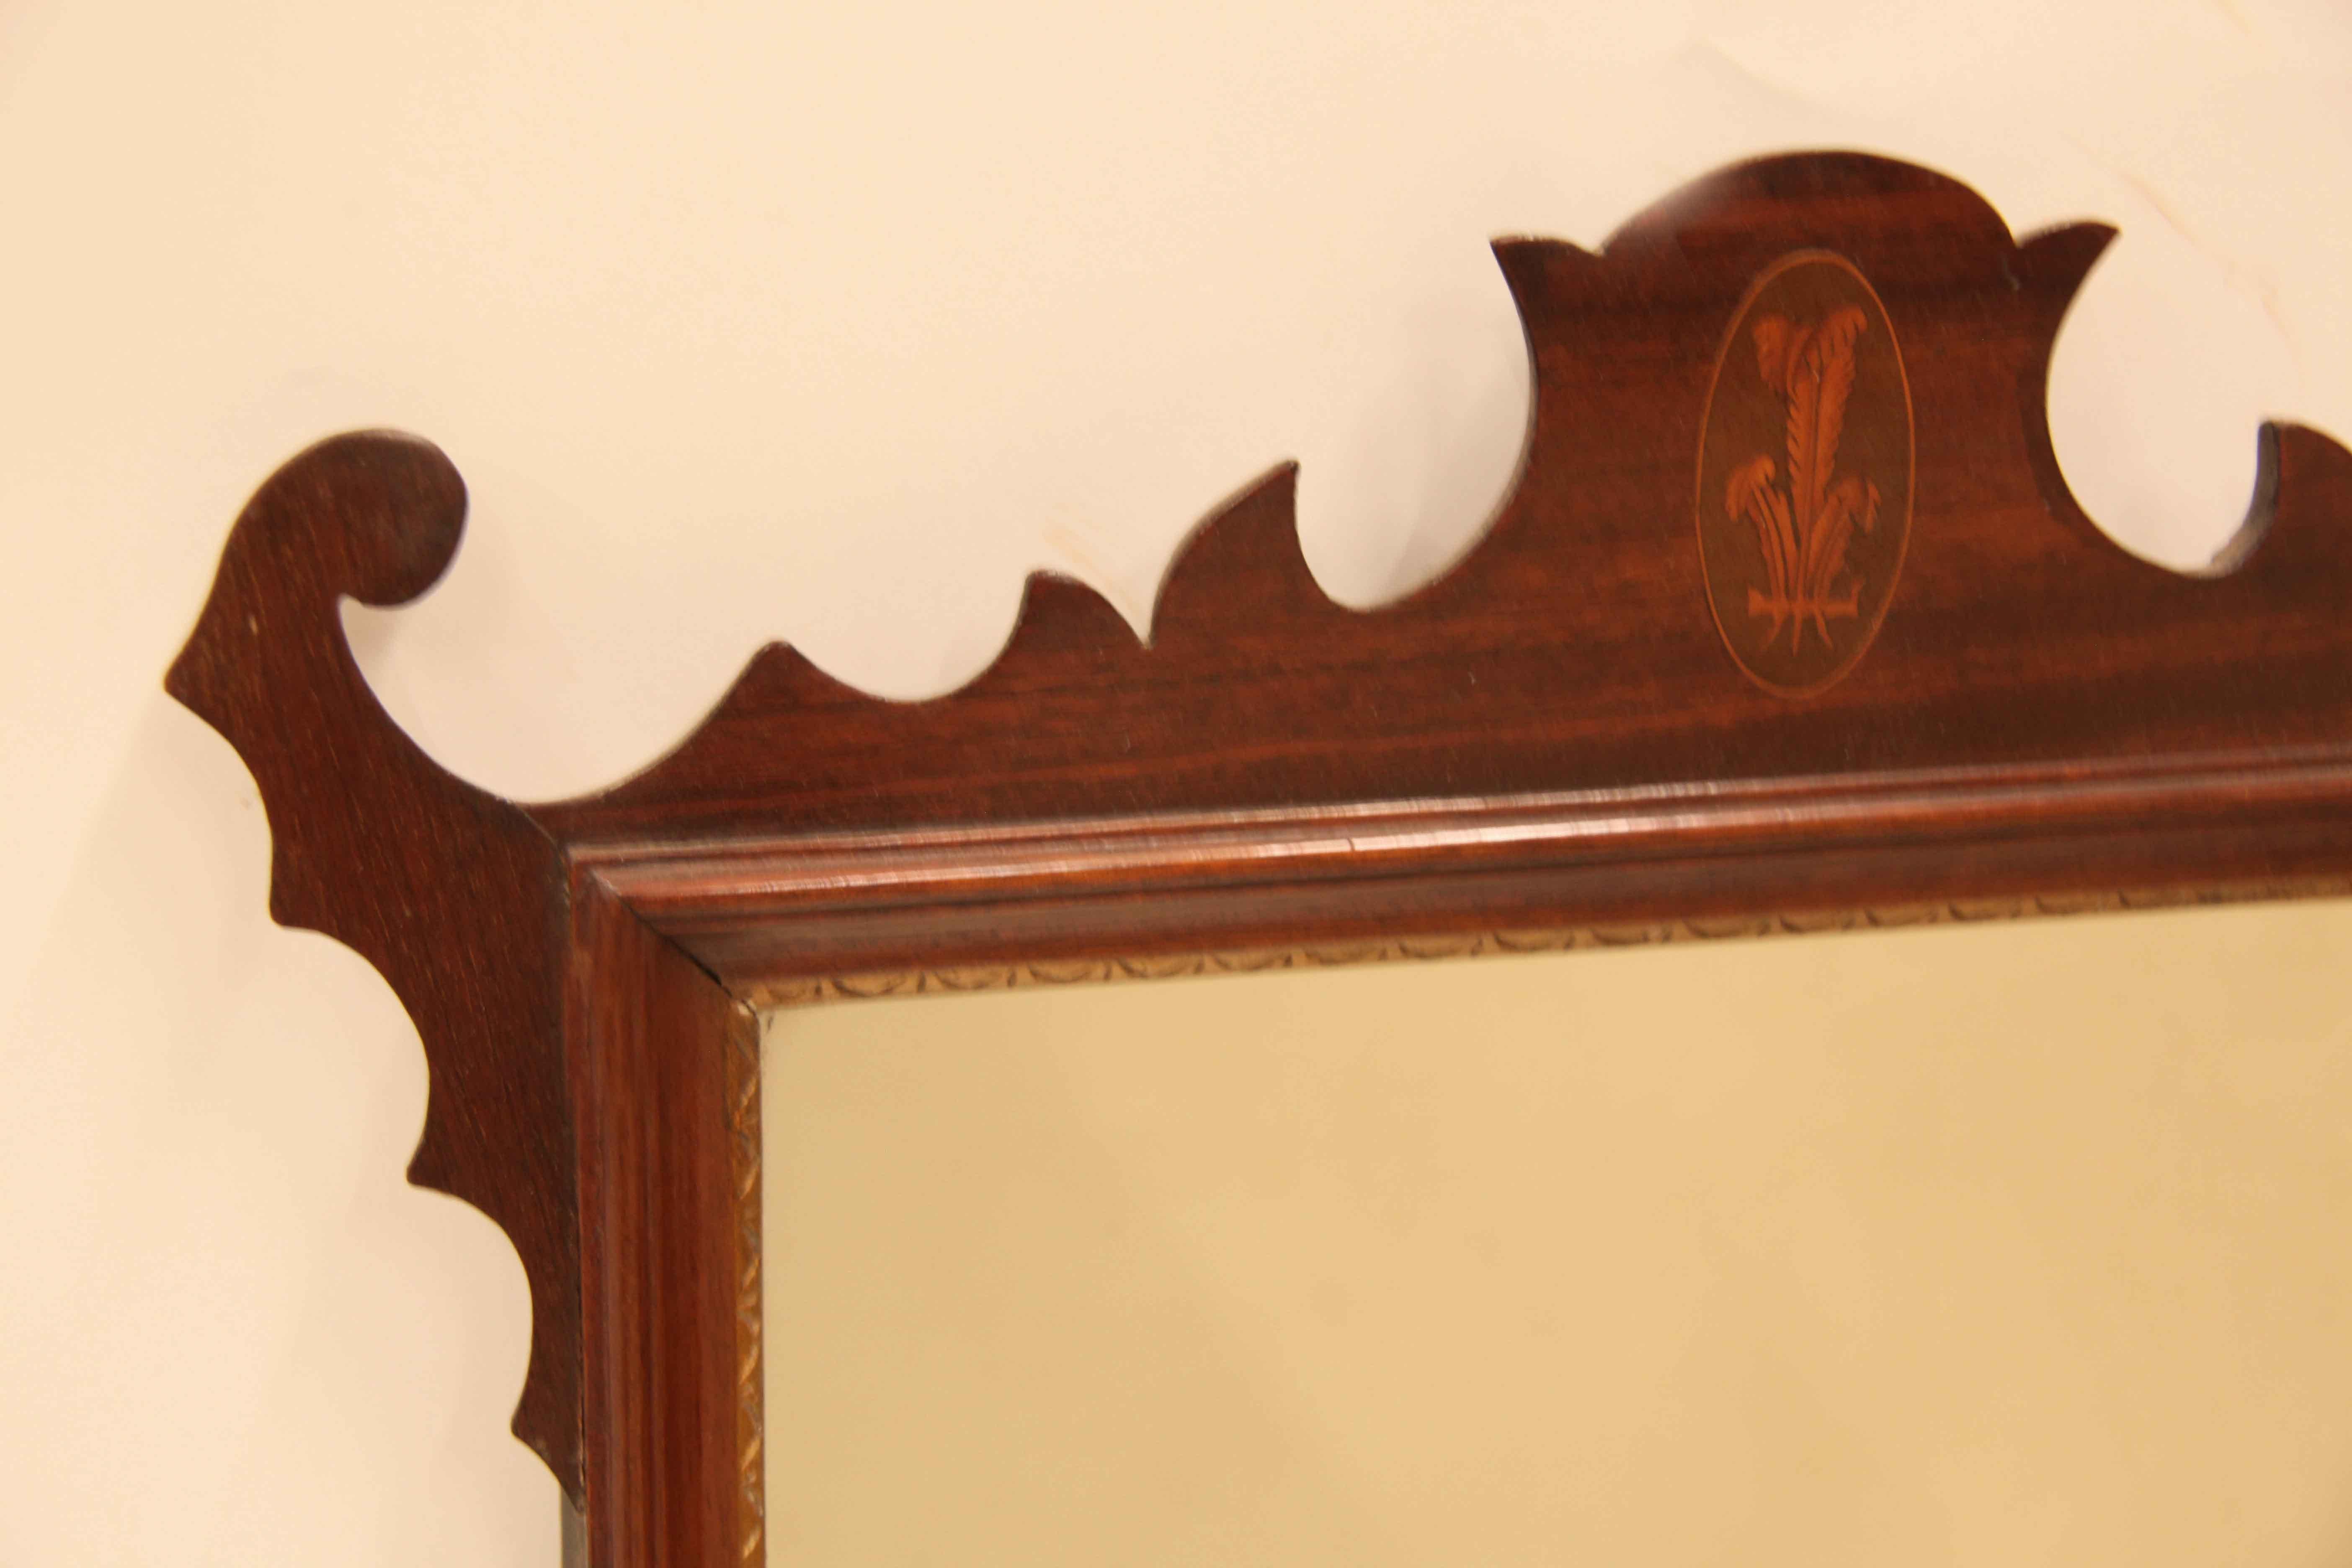 Miroir marqueté de style George III. La partie supérieure présente un magnifique motif (qui se répète en bas) avec un panache du Prince de Galles incrusté au centre. Le miroir en verre d'origine est encadré par un motif de demi-lune gravé à la main